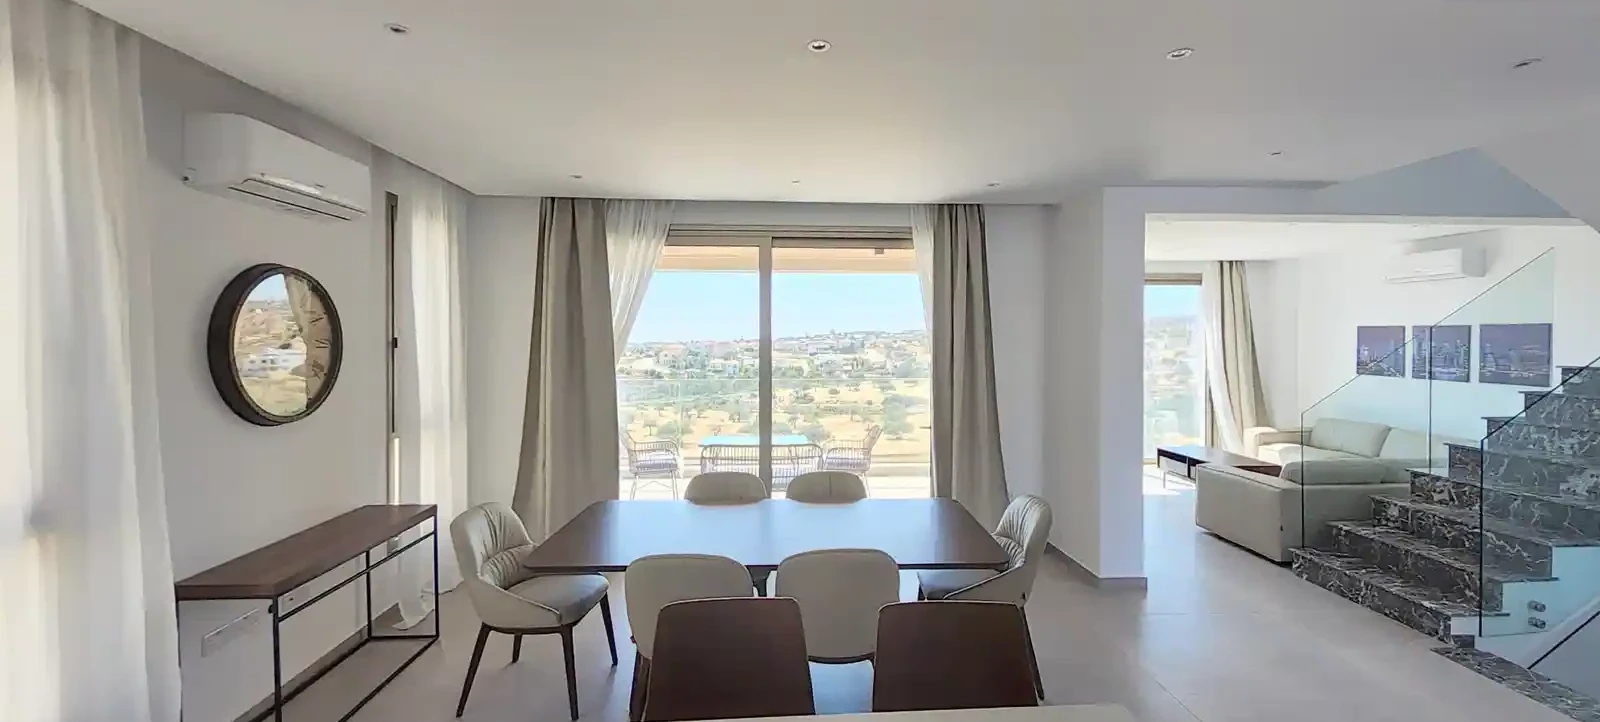 4-bedroom villa to rent €4.700, image 1